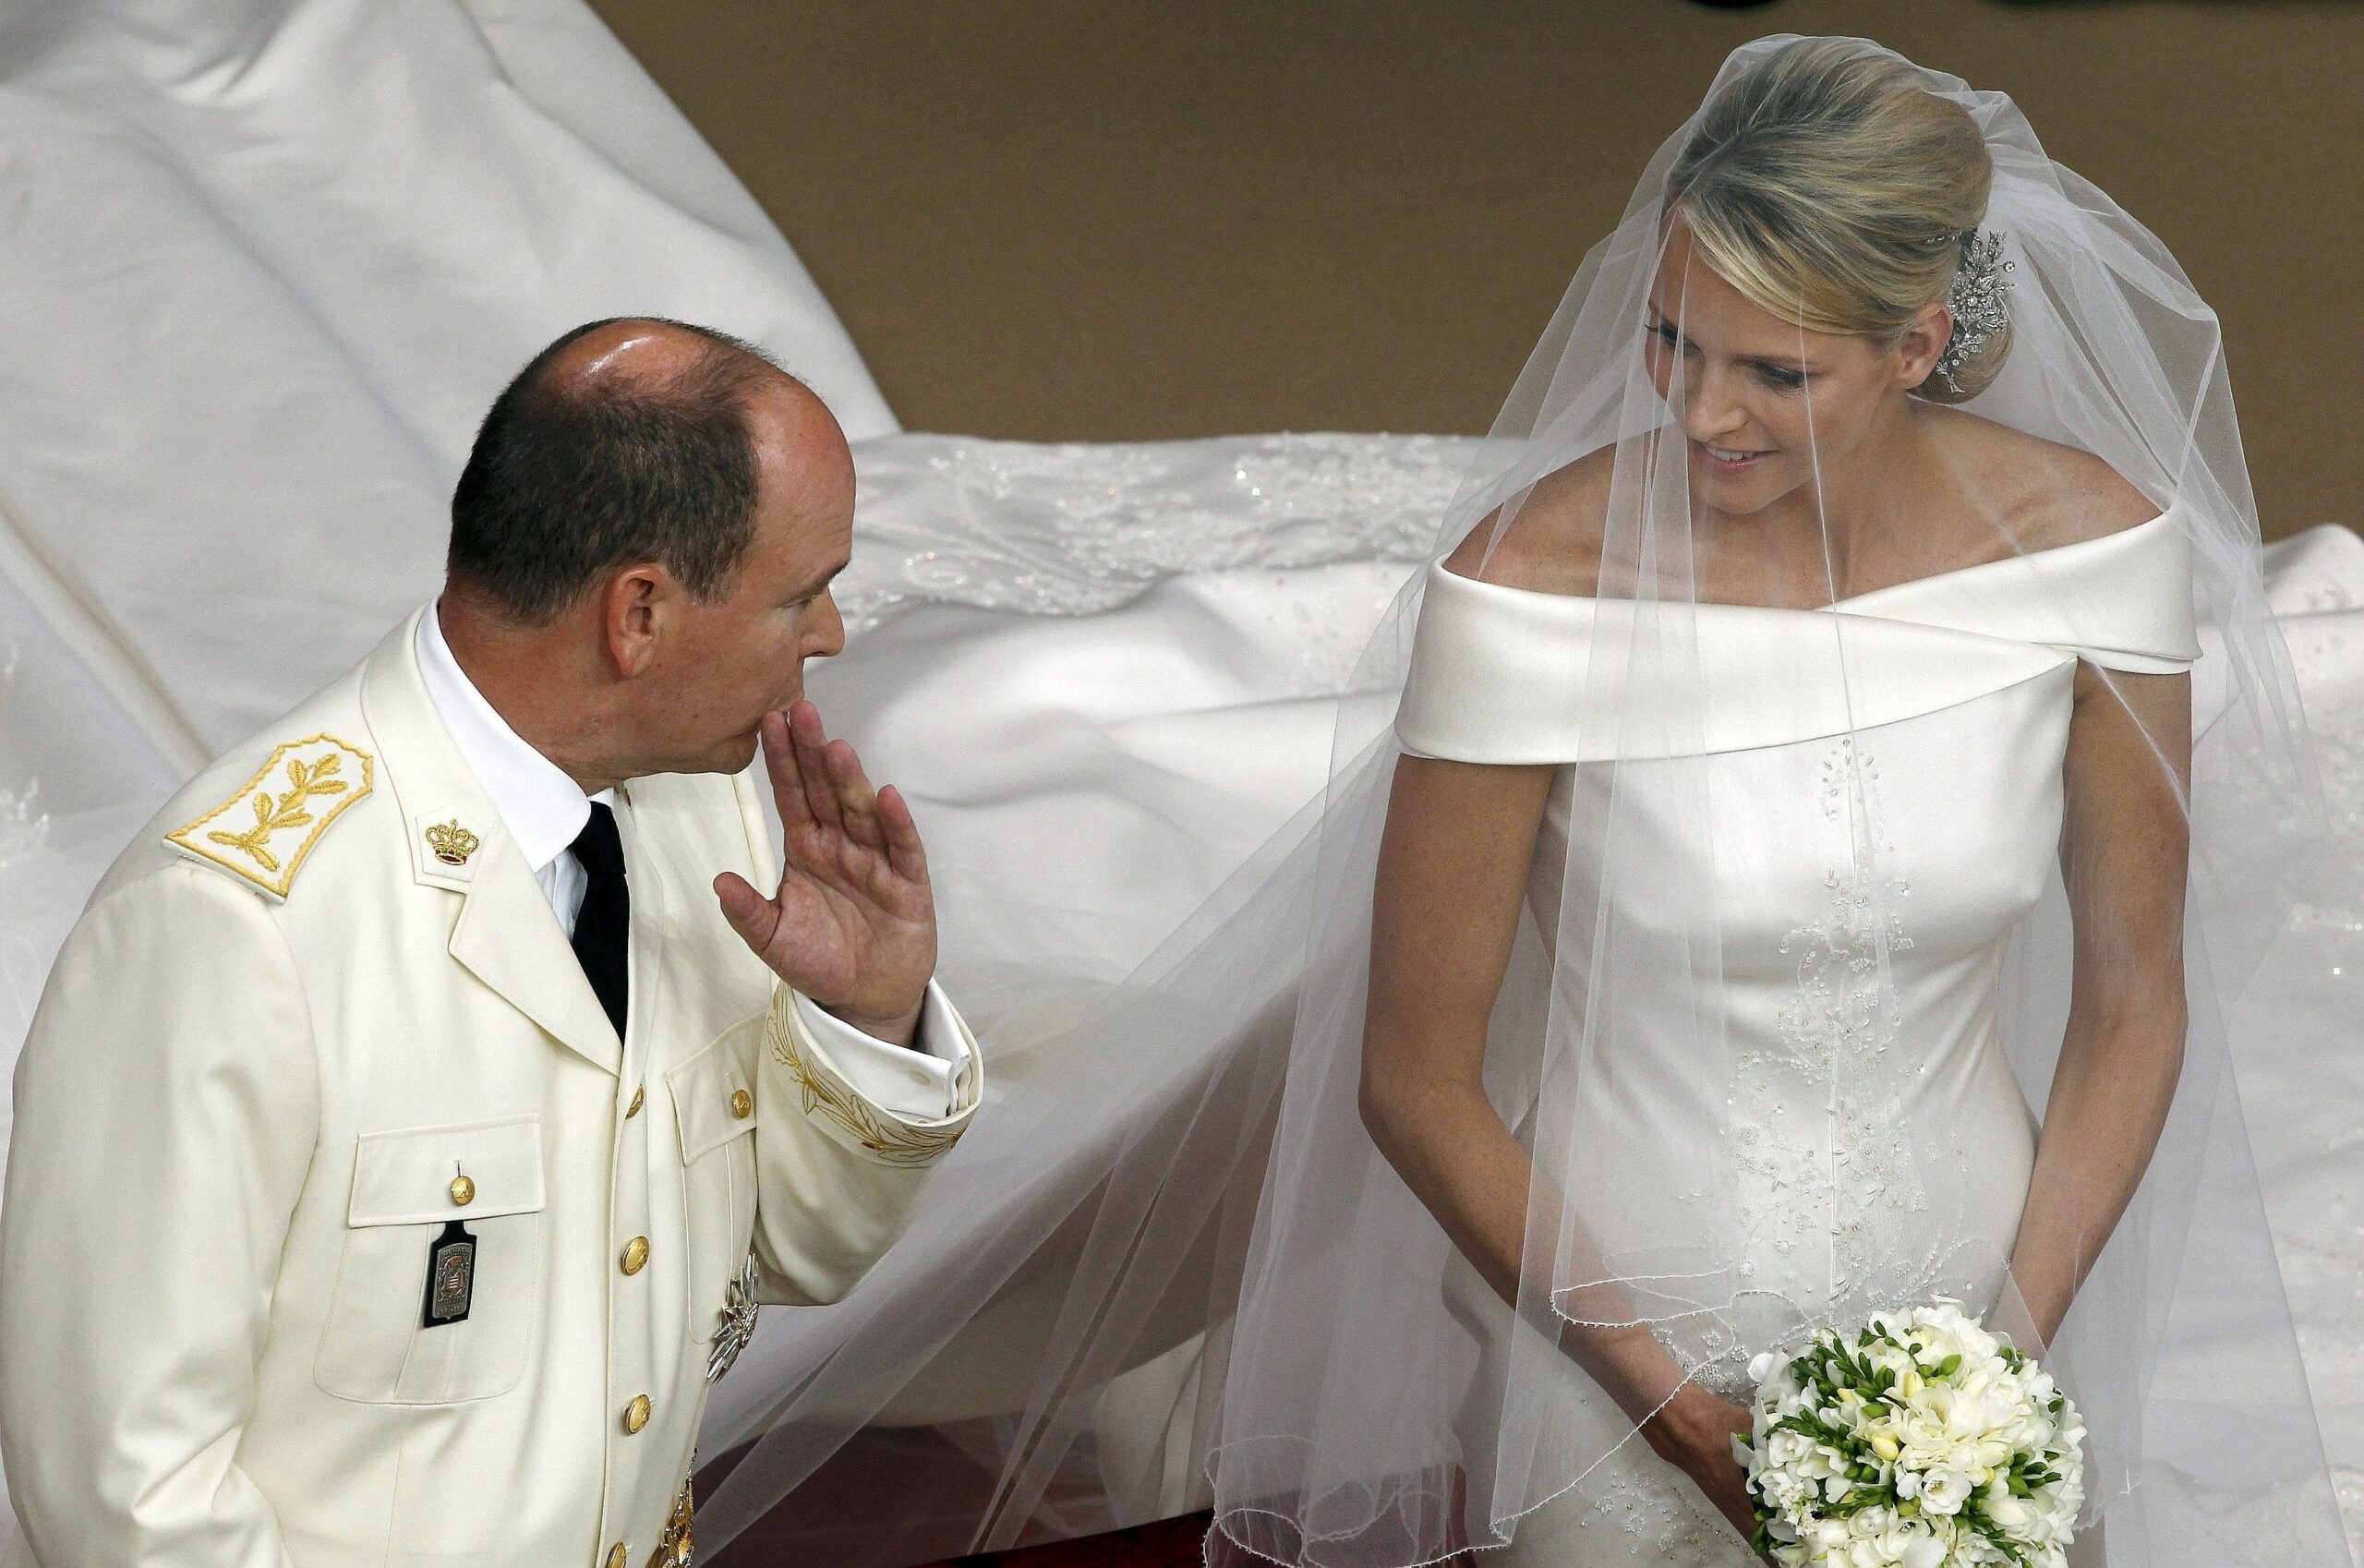 Nachmittags hatten sich Fürst Albert II und Charlene den kirchlichen Segen für ihre Ehe geholt.